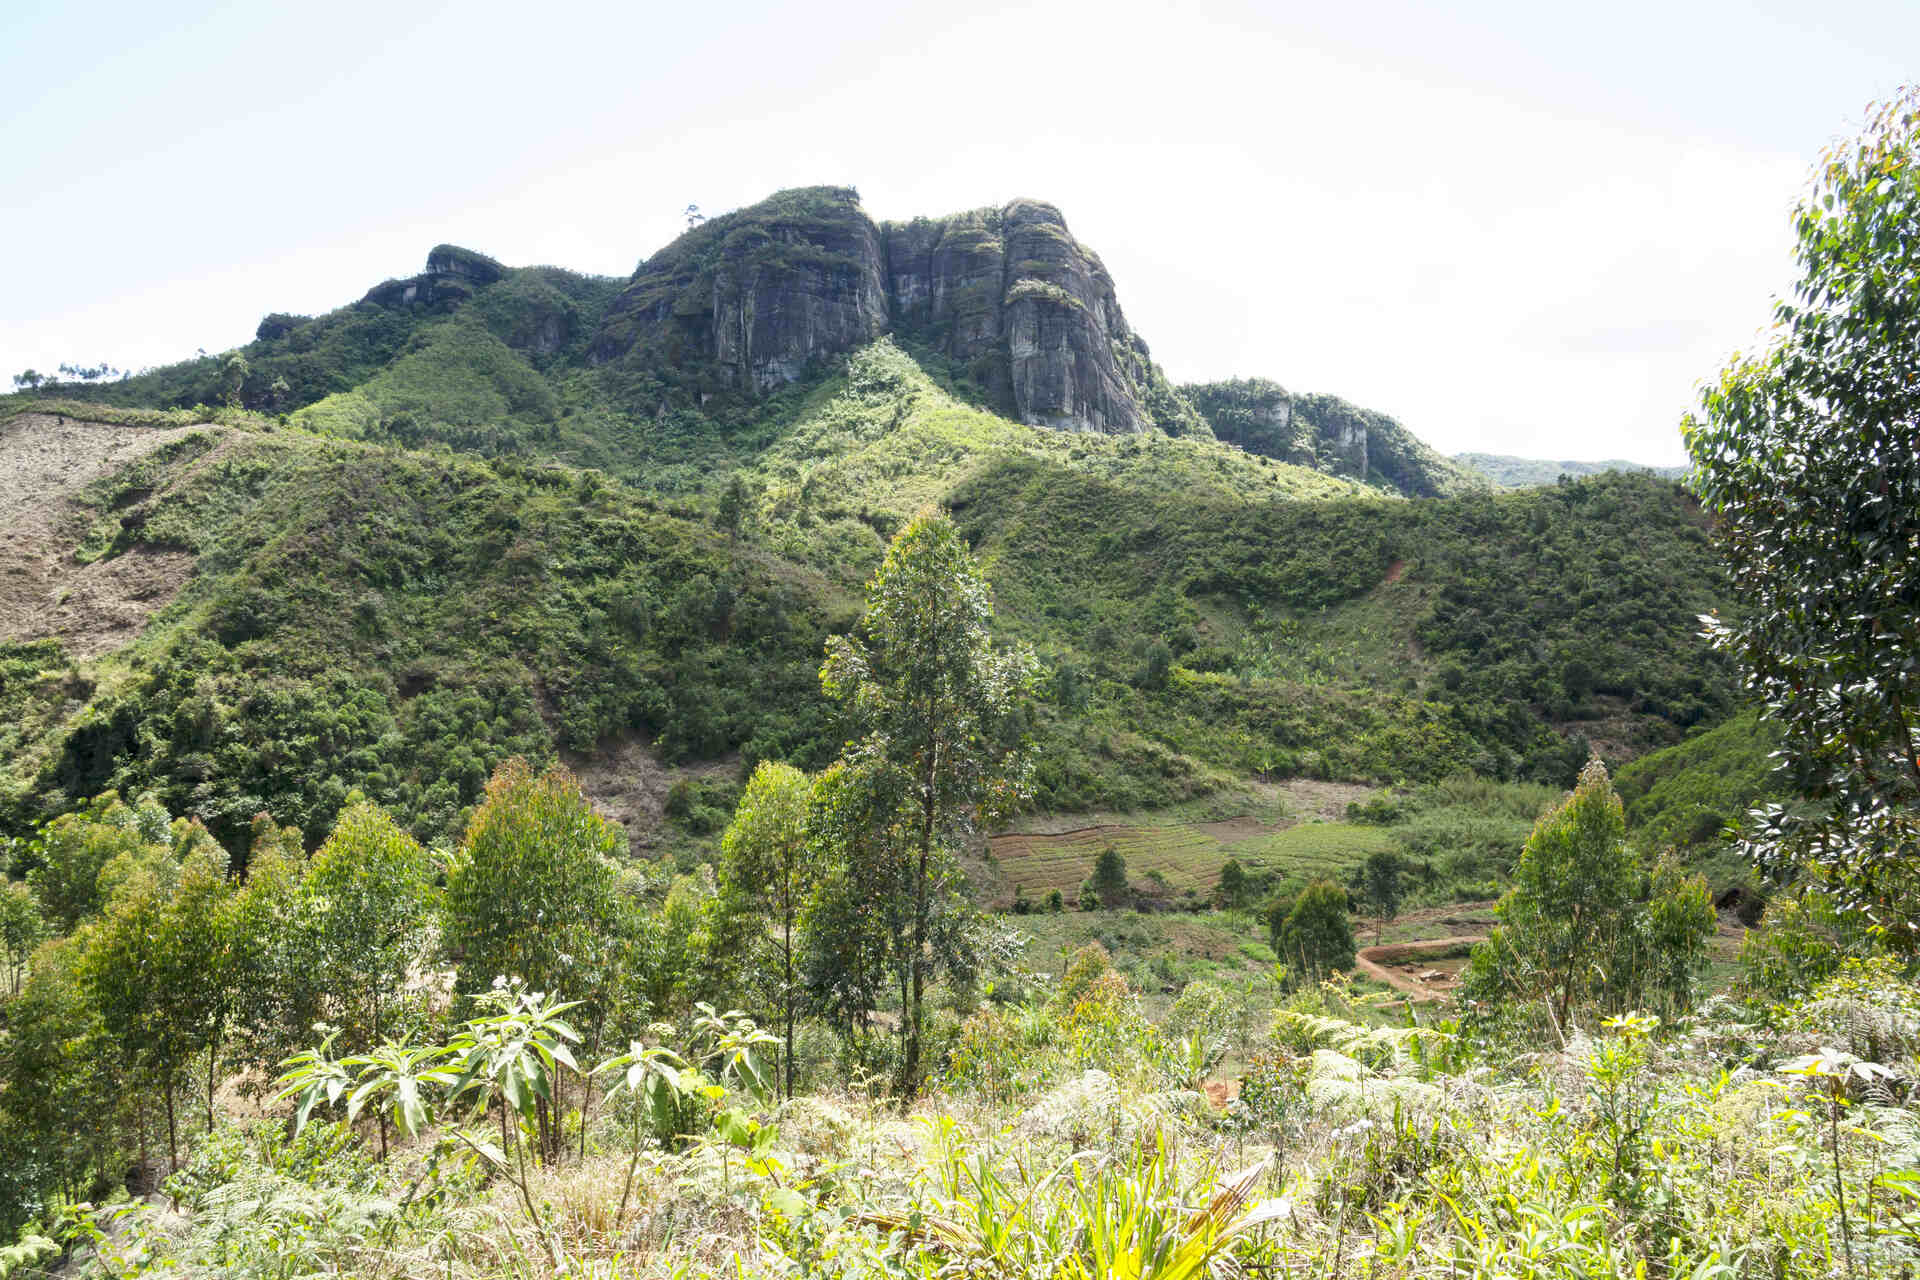 Madagaskar: Unregelmäßige Regenfälle und Gesteinserosion spielen eine entscheidende Rolle bei der Entstehung und Entwicklung neuer Arten